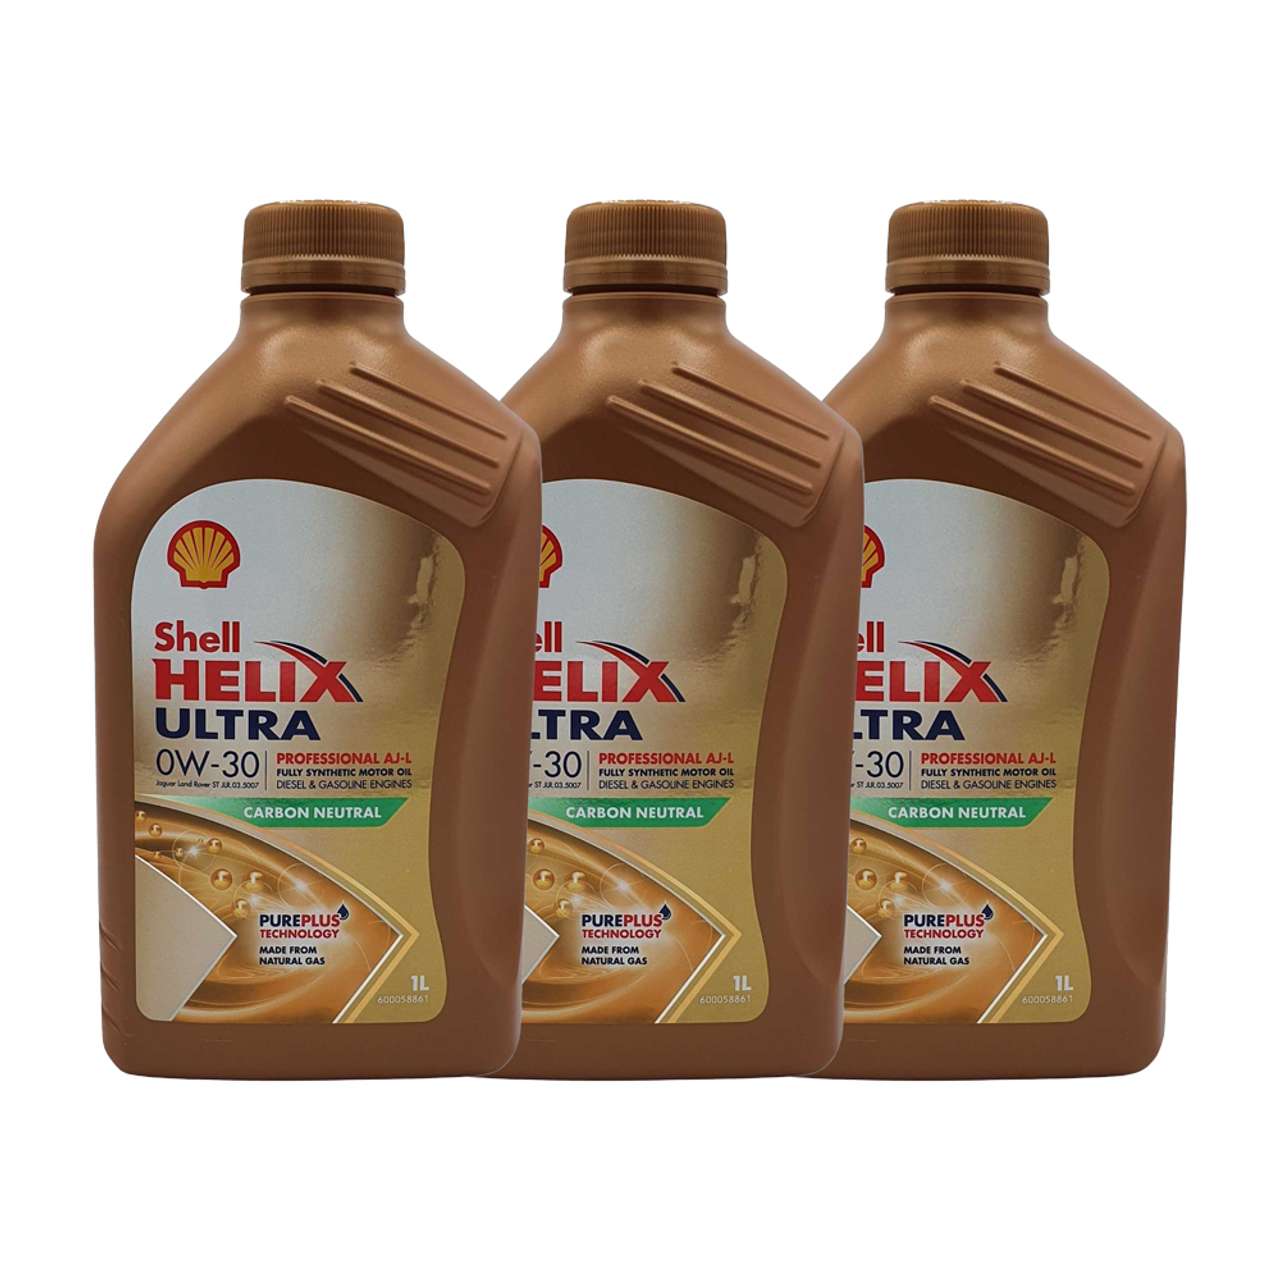 Shell Helix Ultra Professional AJ-L 0W-30 3x1 Liter